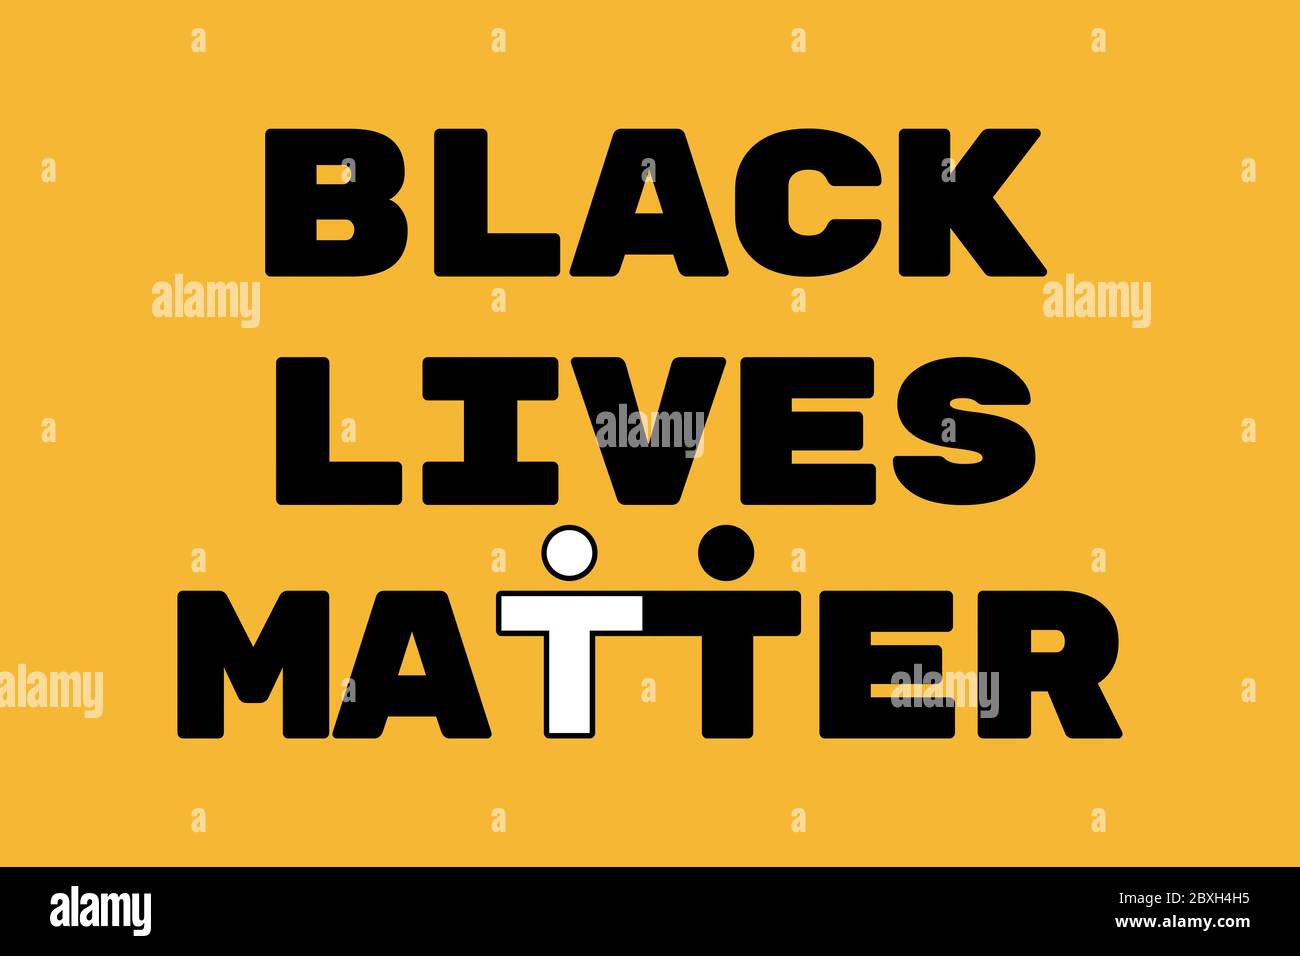 Illustrazione di stock del poster antirazzista con la frase Black Lives materia su sfondo giallo. Le lettere T formano due persone di colori diversi Foto Stock